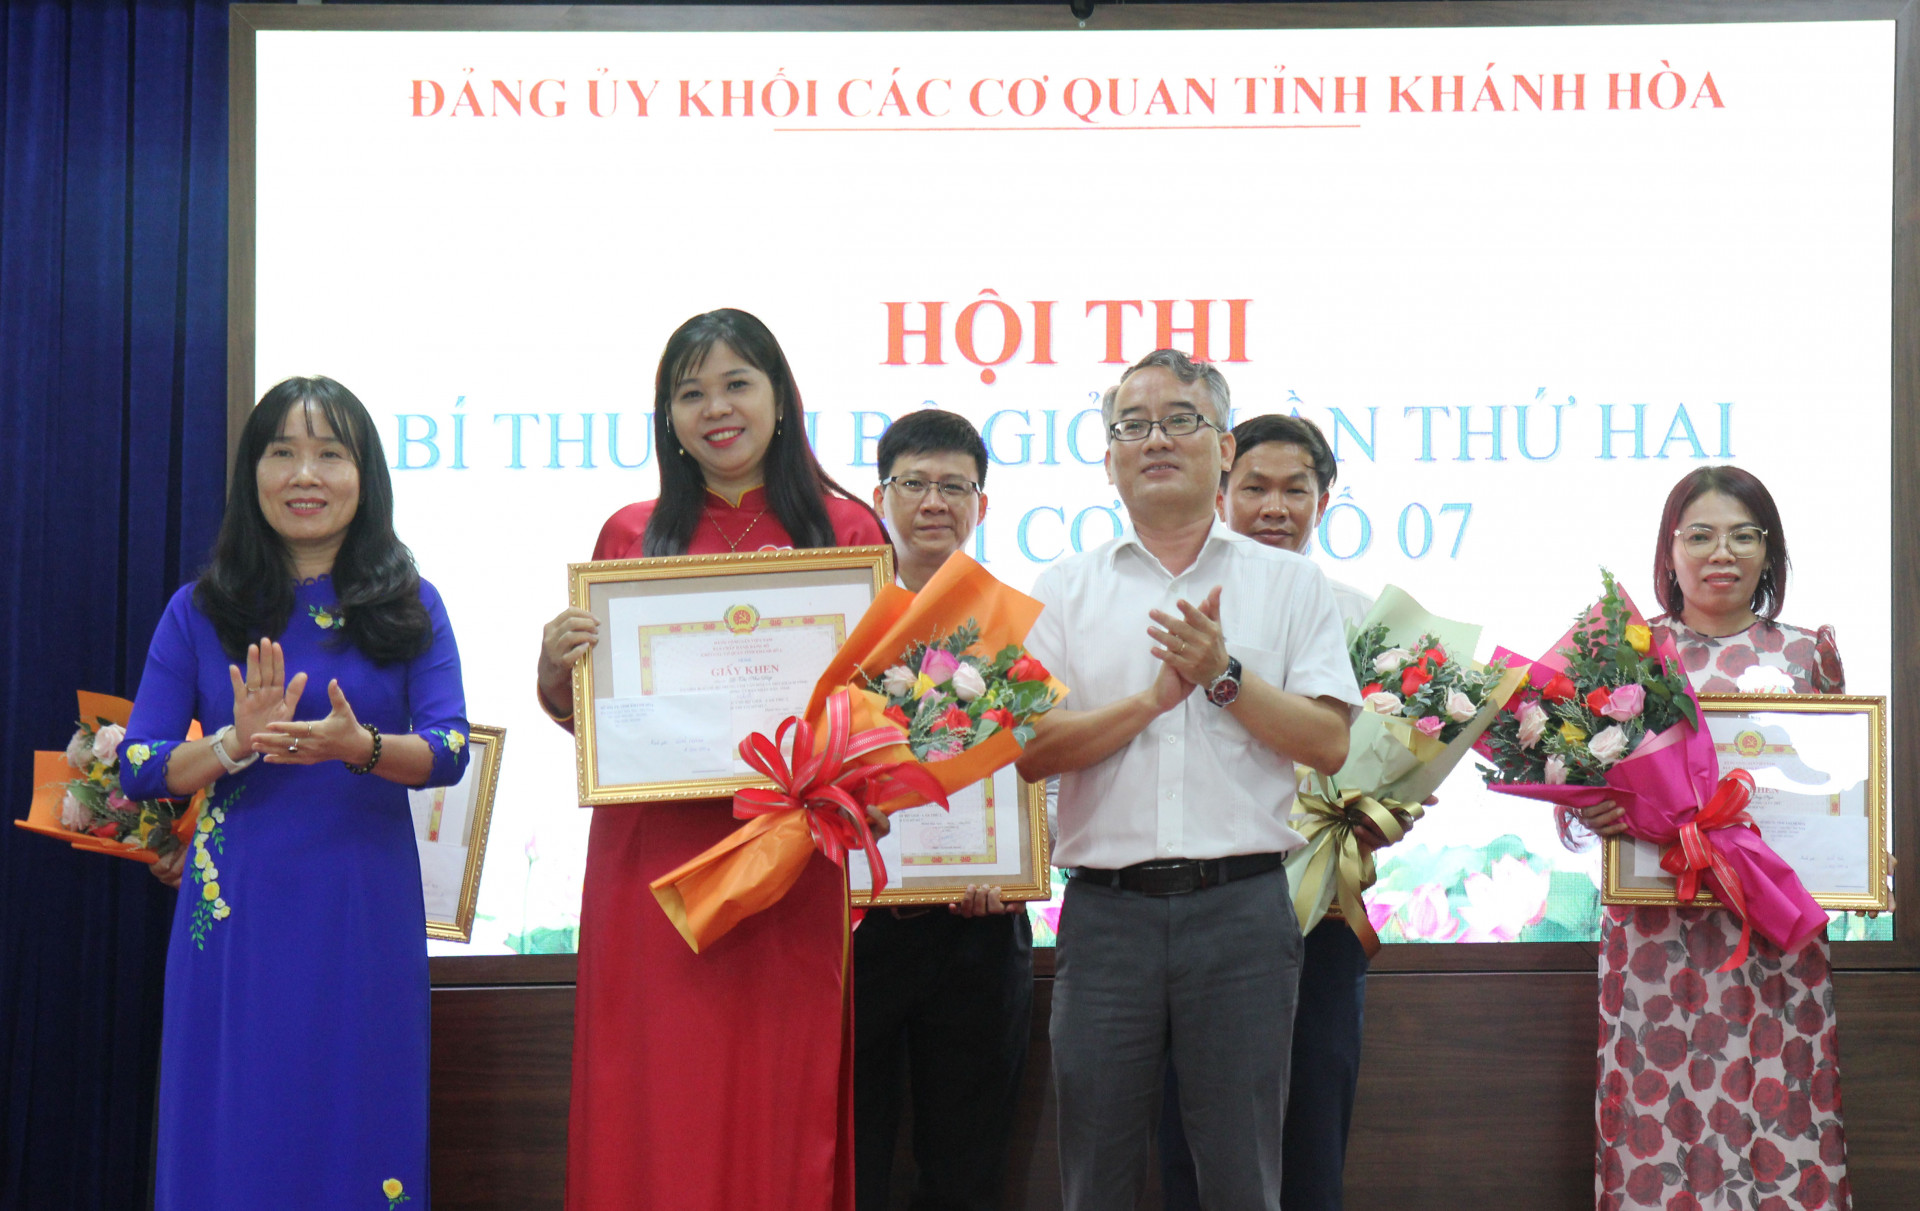 Bà Nguyễn Thị Bích Liên và lãnh đạo Sở Nội vụ trao giải Nhất cho thí sinh Lê Thị Như Điệp.